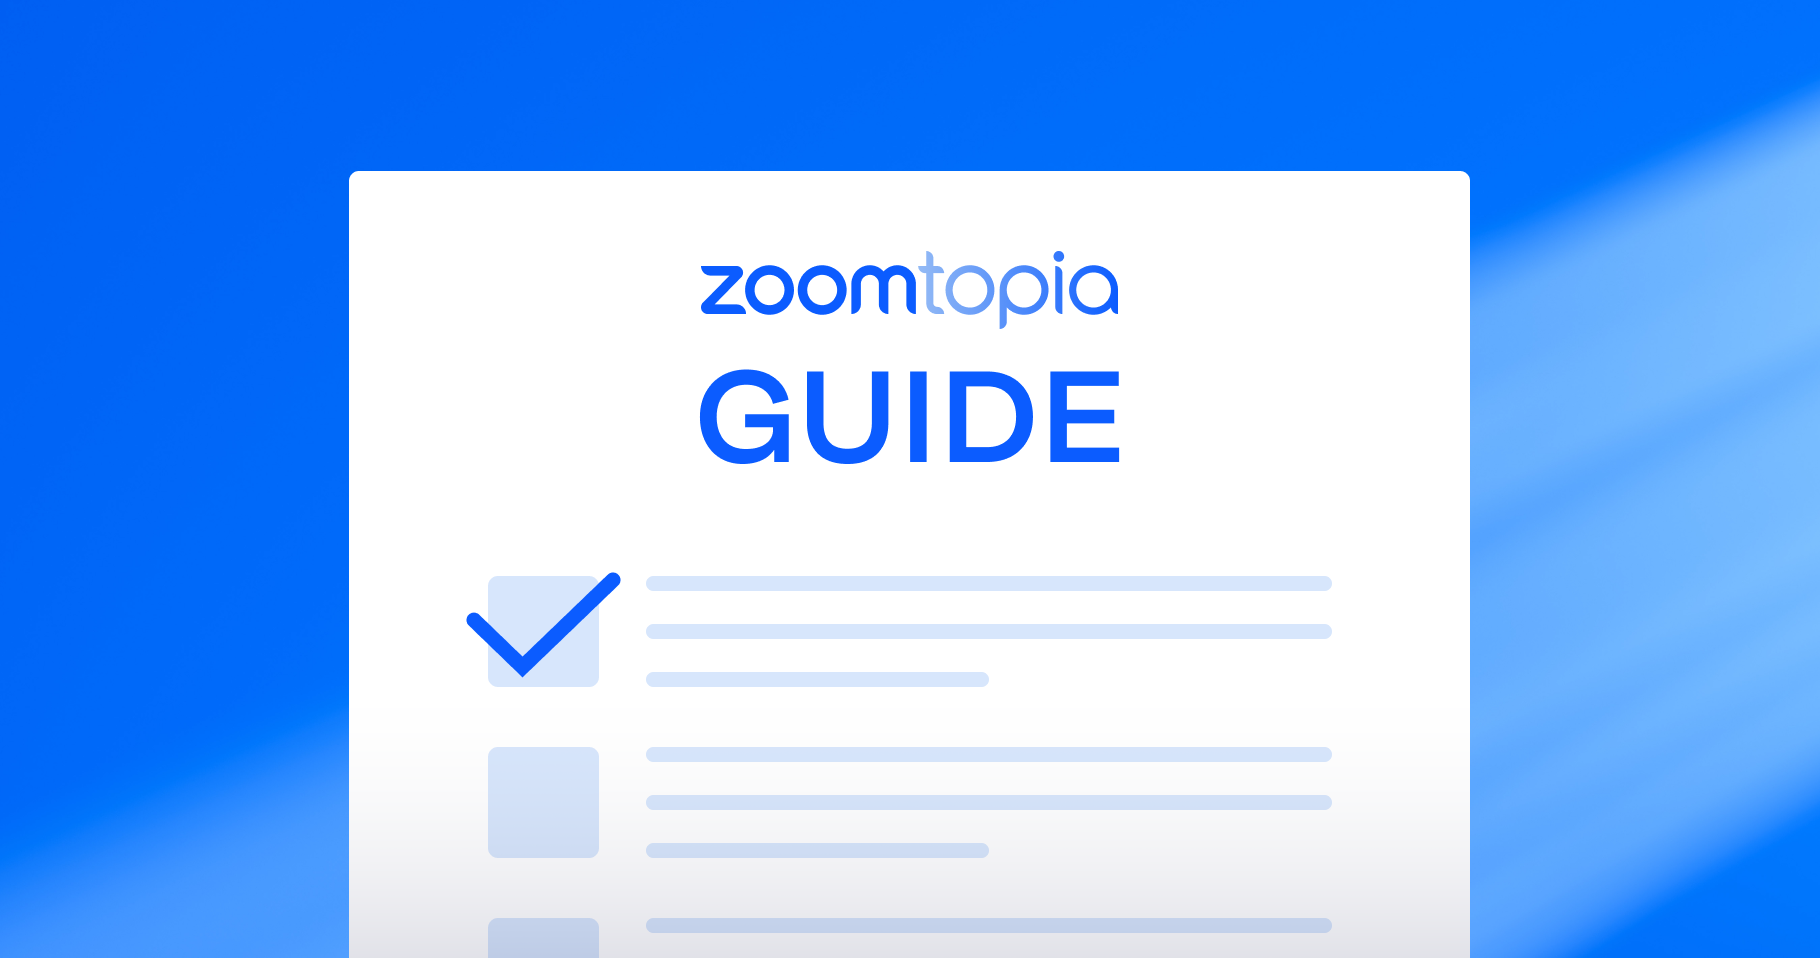 Participando do Zoomtopia 2023 presencial ou virtualmente? Aqui está o que você precisa saber antes de ir